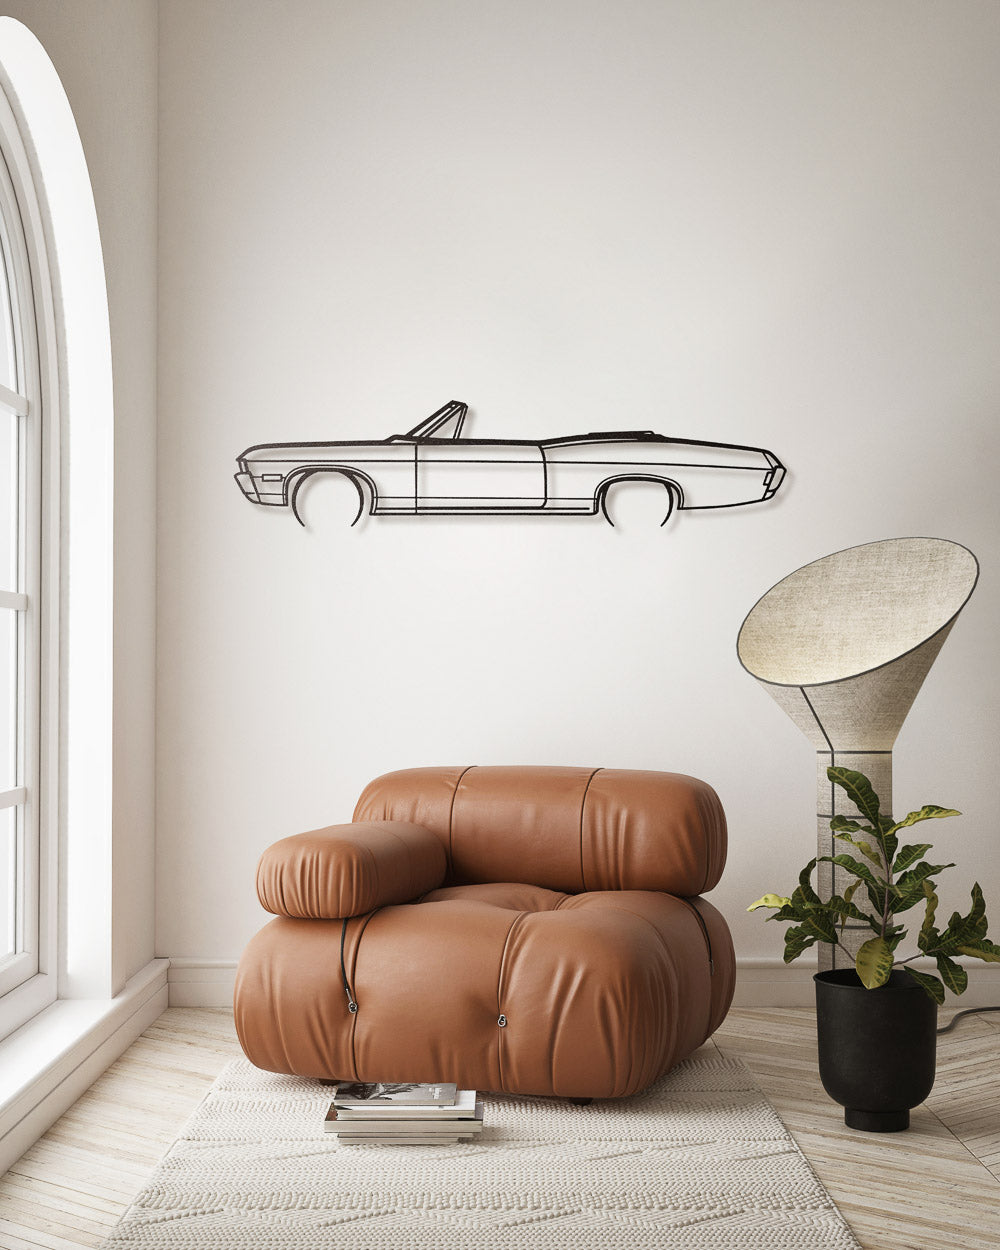 Nos - Chevrolet Impala 307 Cabrio - Sagoma in Metallo di Design Dettagliato